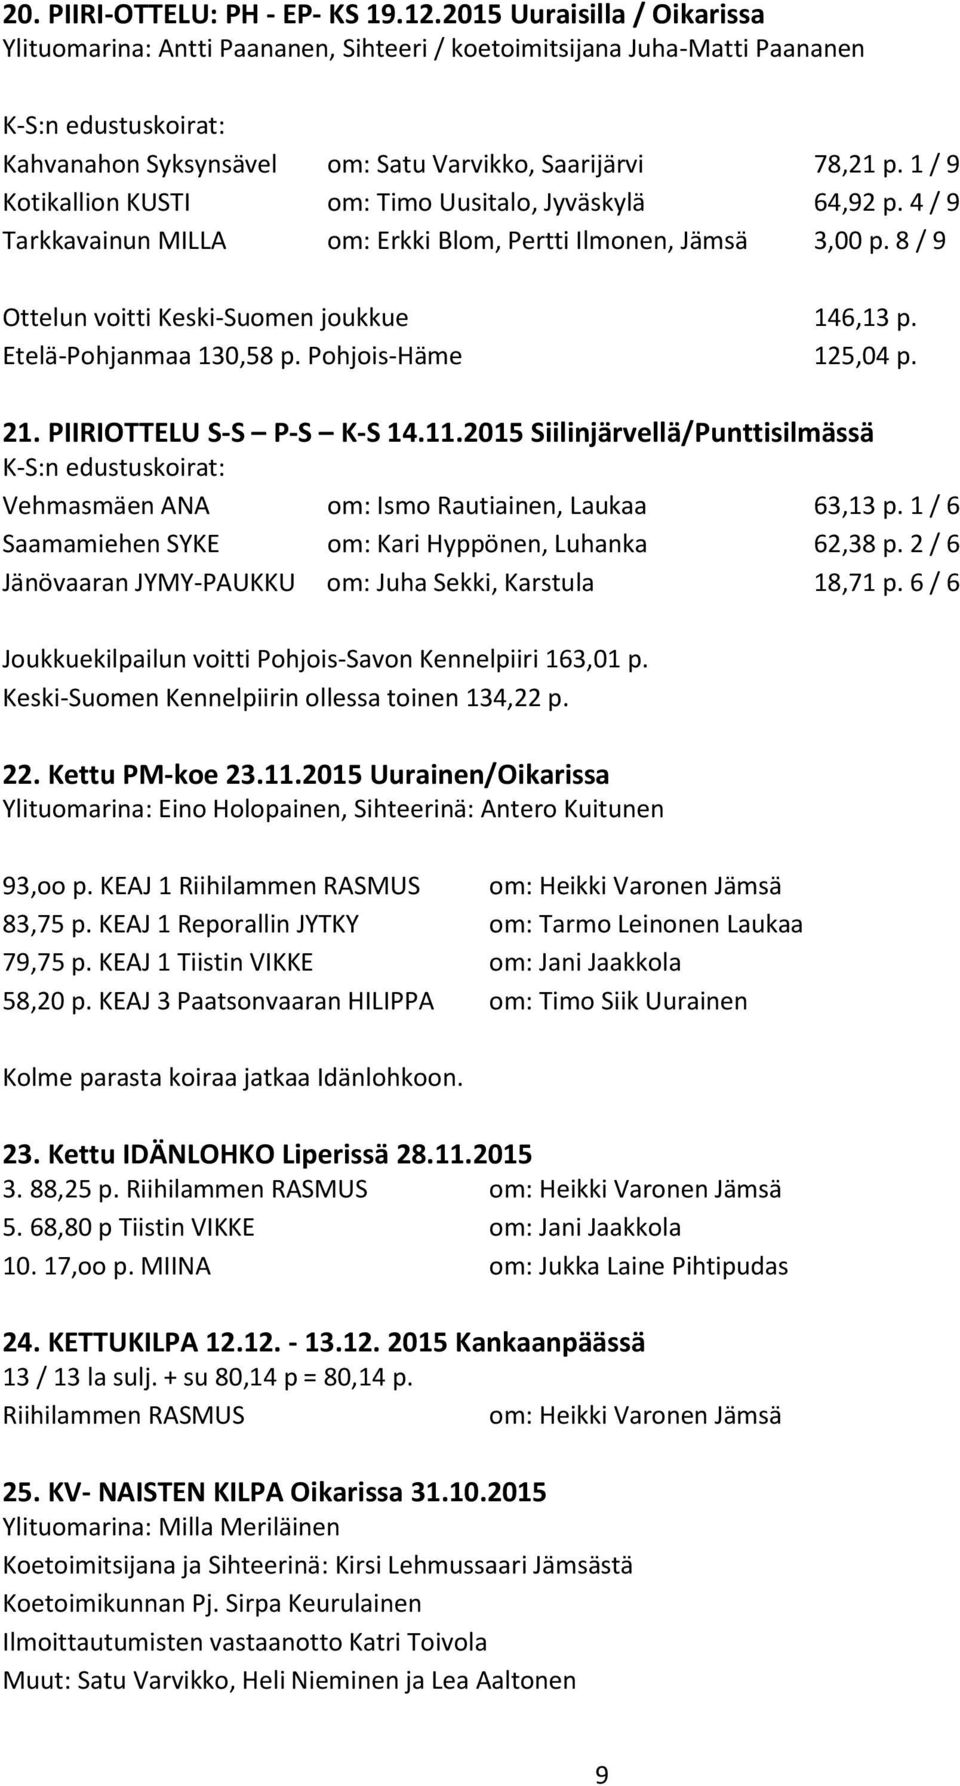 1 / 9 Kotikallion KUSTI om: Timo Uusitalo, Jyväskylä 64,92 p. 4 / 9 Tarkkavainun MILLA om: Erkki Blom, Pertti Ilmonen, Jämsä 3,00 p. 8 / 9 Ottelun voitti Keski-Suomen joukkue 146,13 p.